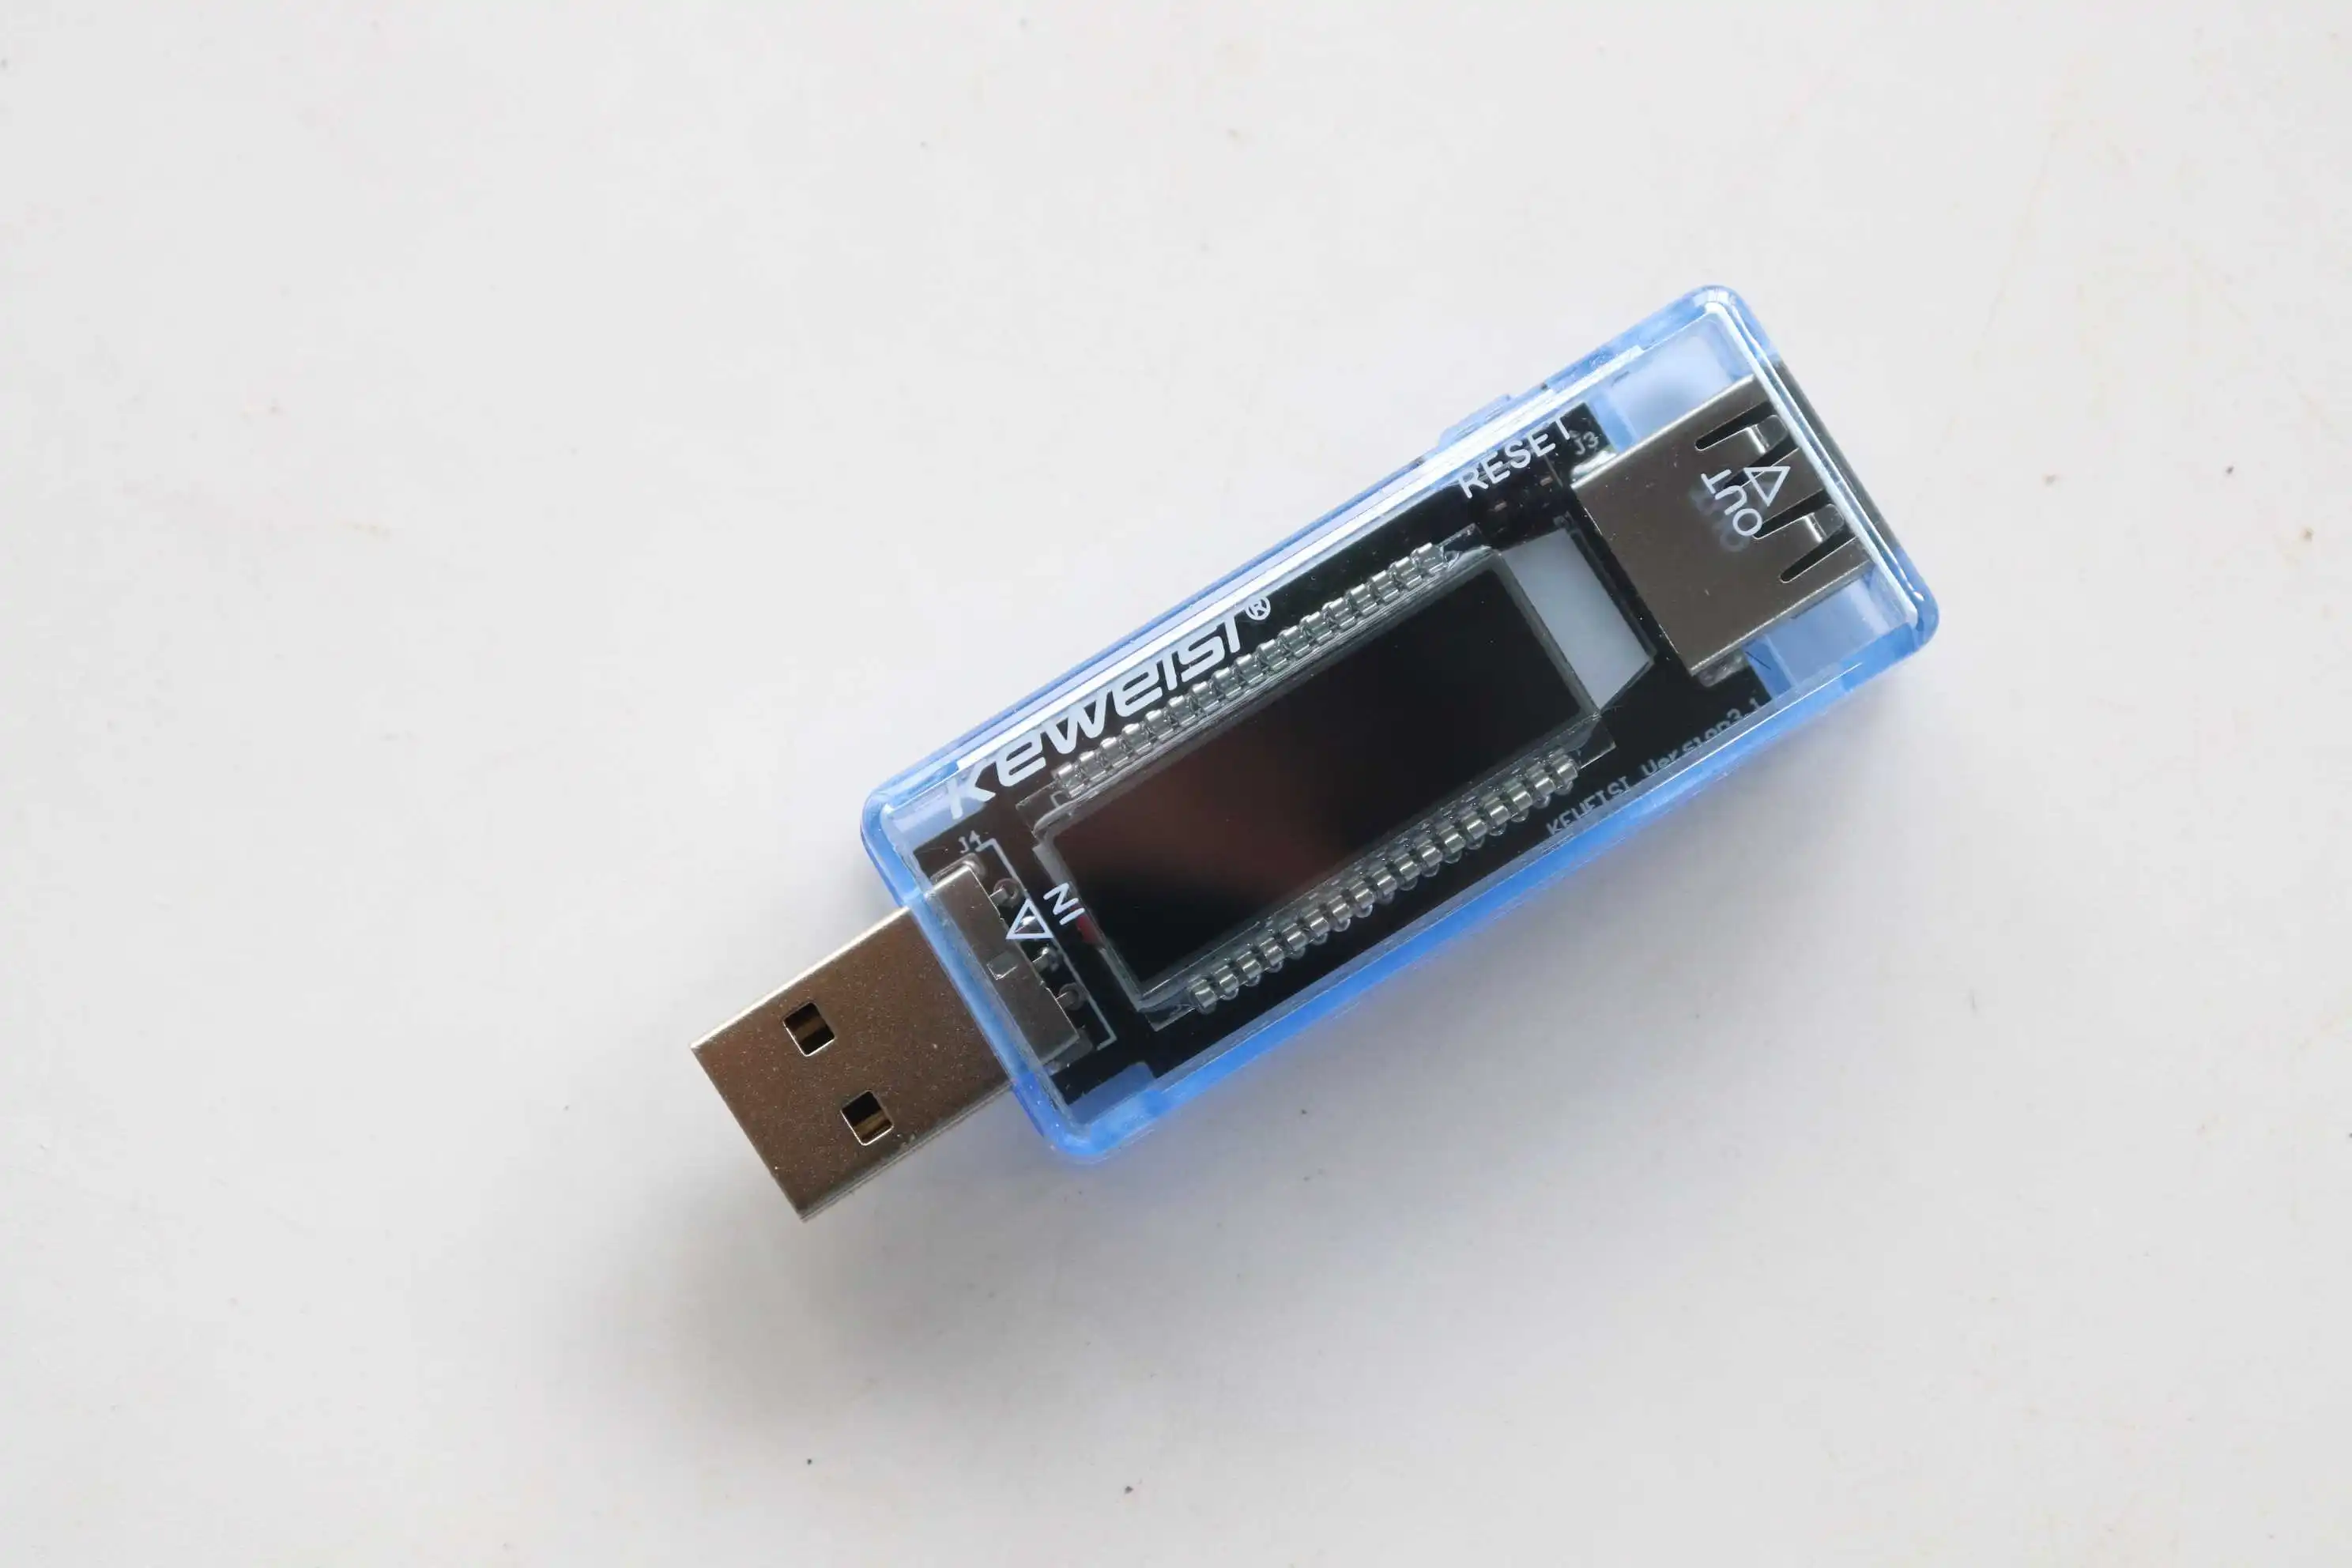 ЖК-дисплей USB детектор USB Вольт текущий Напряжение доктор Зарядное устройство Ёмкость Plug and Play Мощность Bank тестер Вольтметр Амперметр